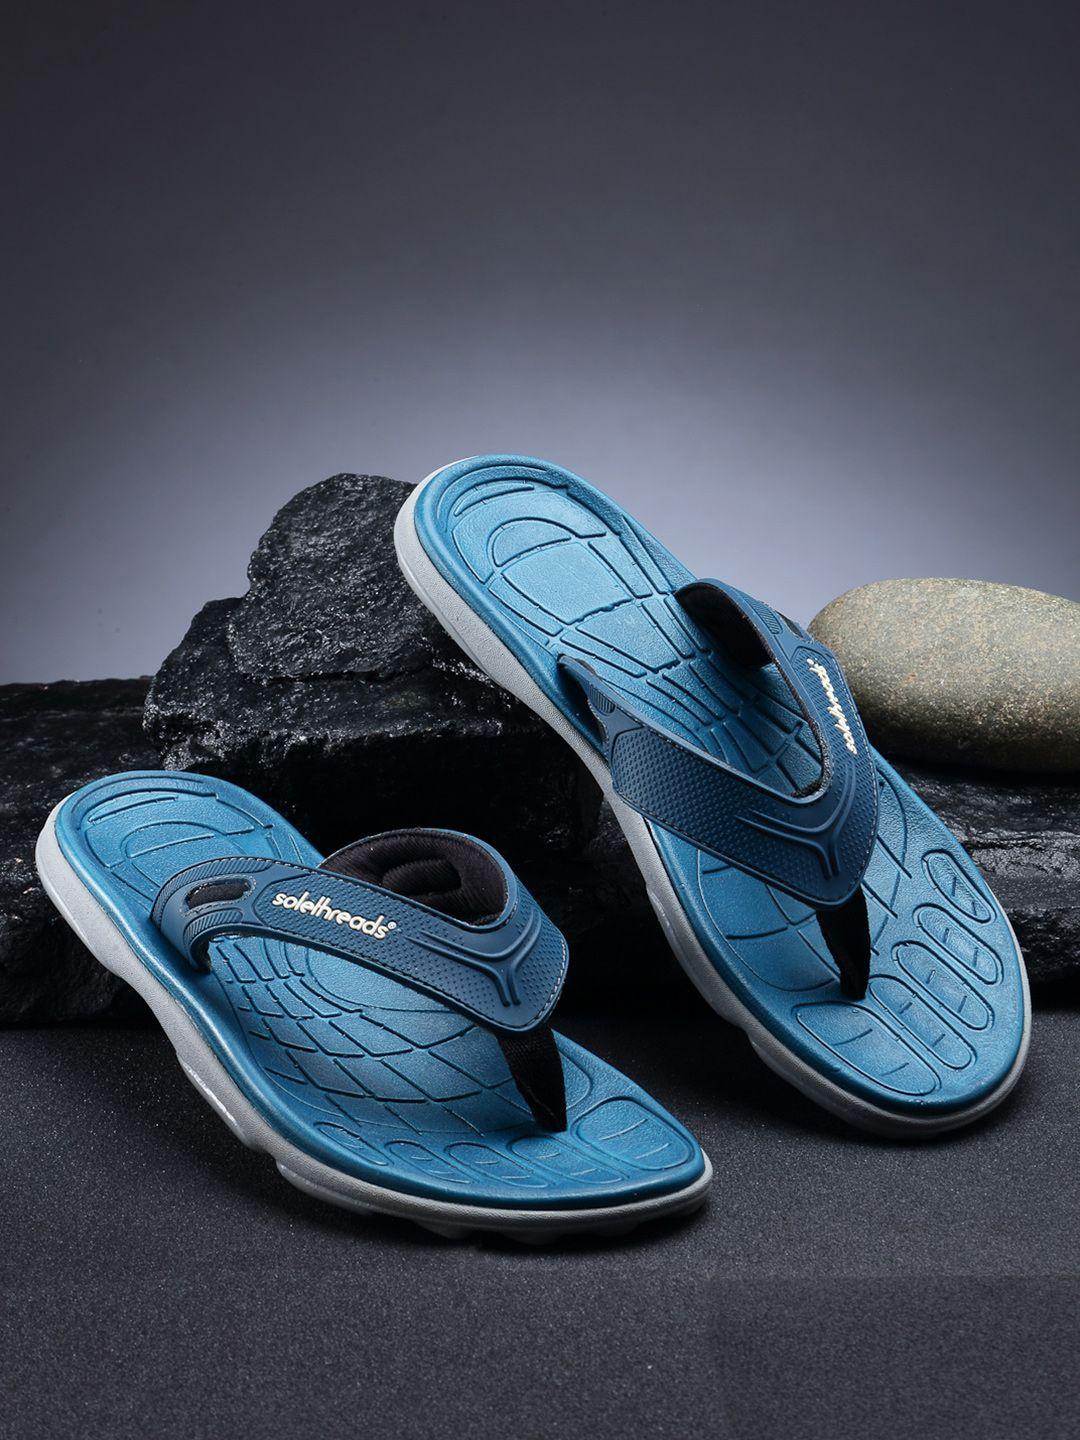 solethreads-men-teal-blue-thong-flip-flops